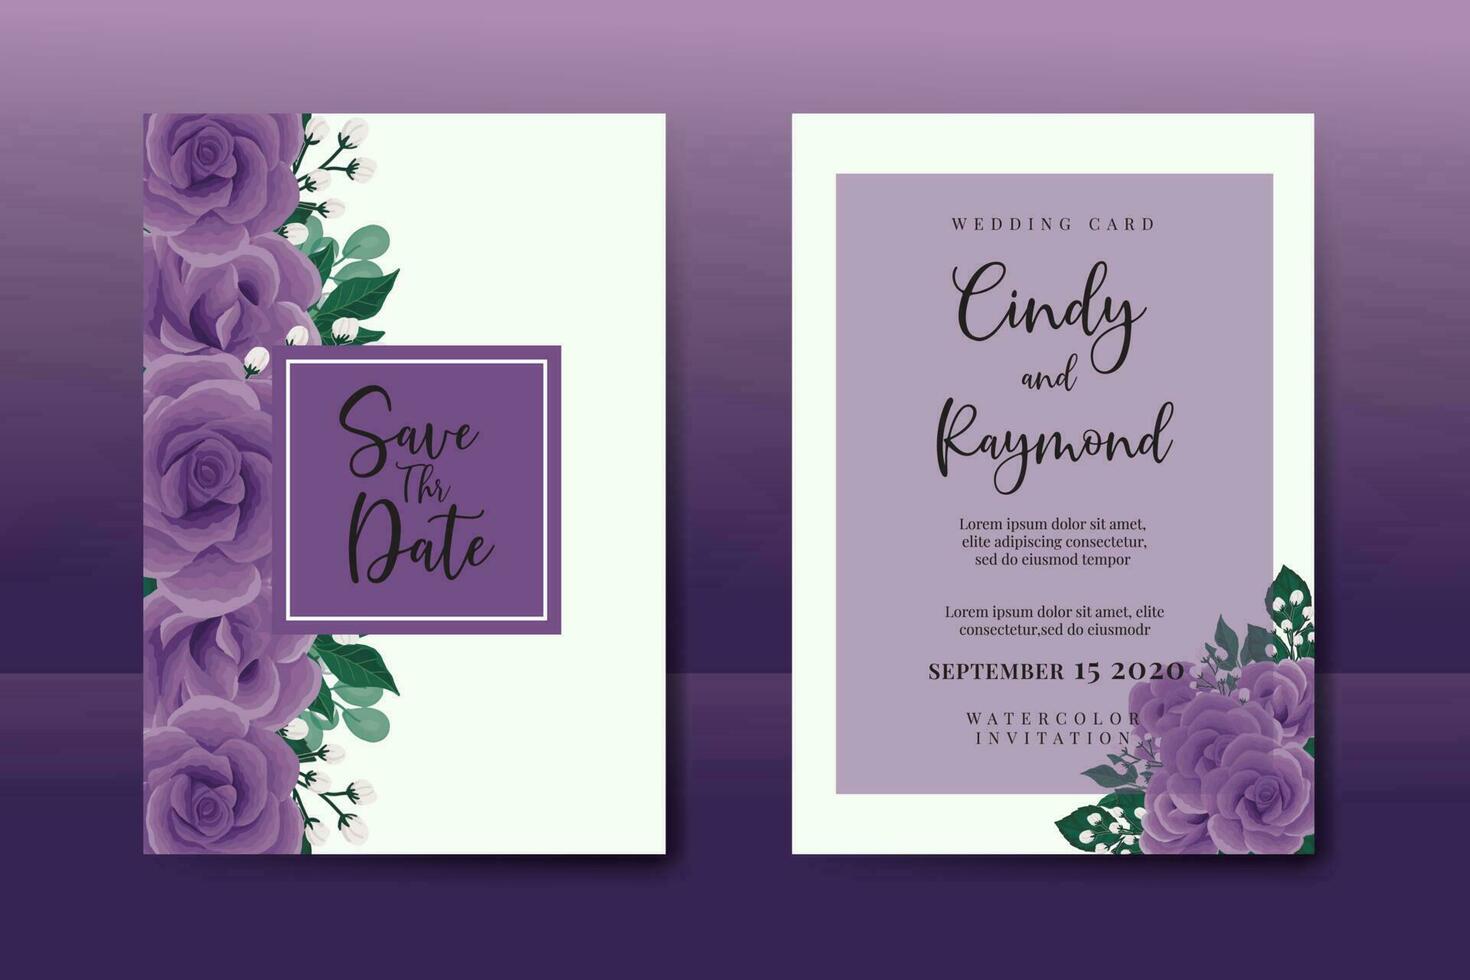 Boda invitación marco colocar, floral acuarela digital mano dibujado púrpura Rosa flor diseño invitación tarjeta modelo vector